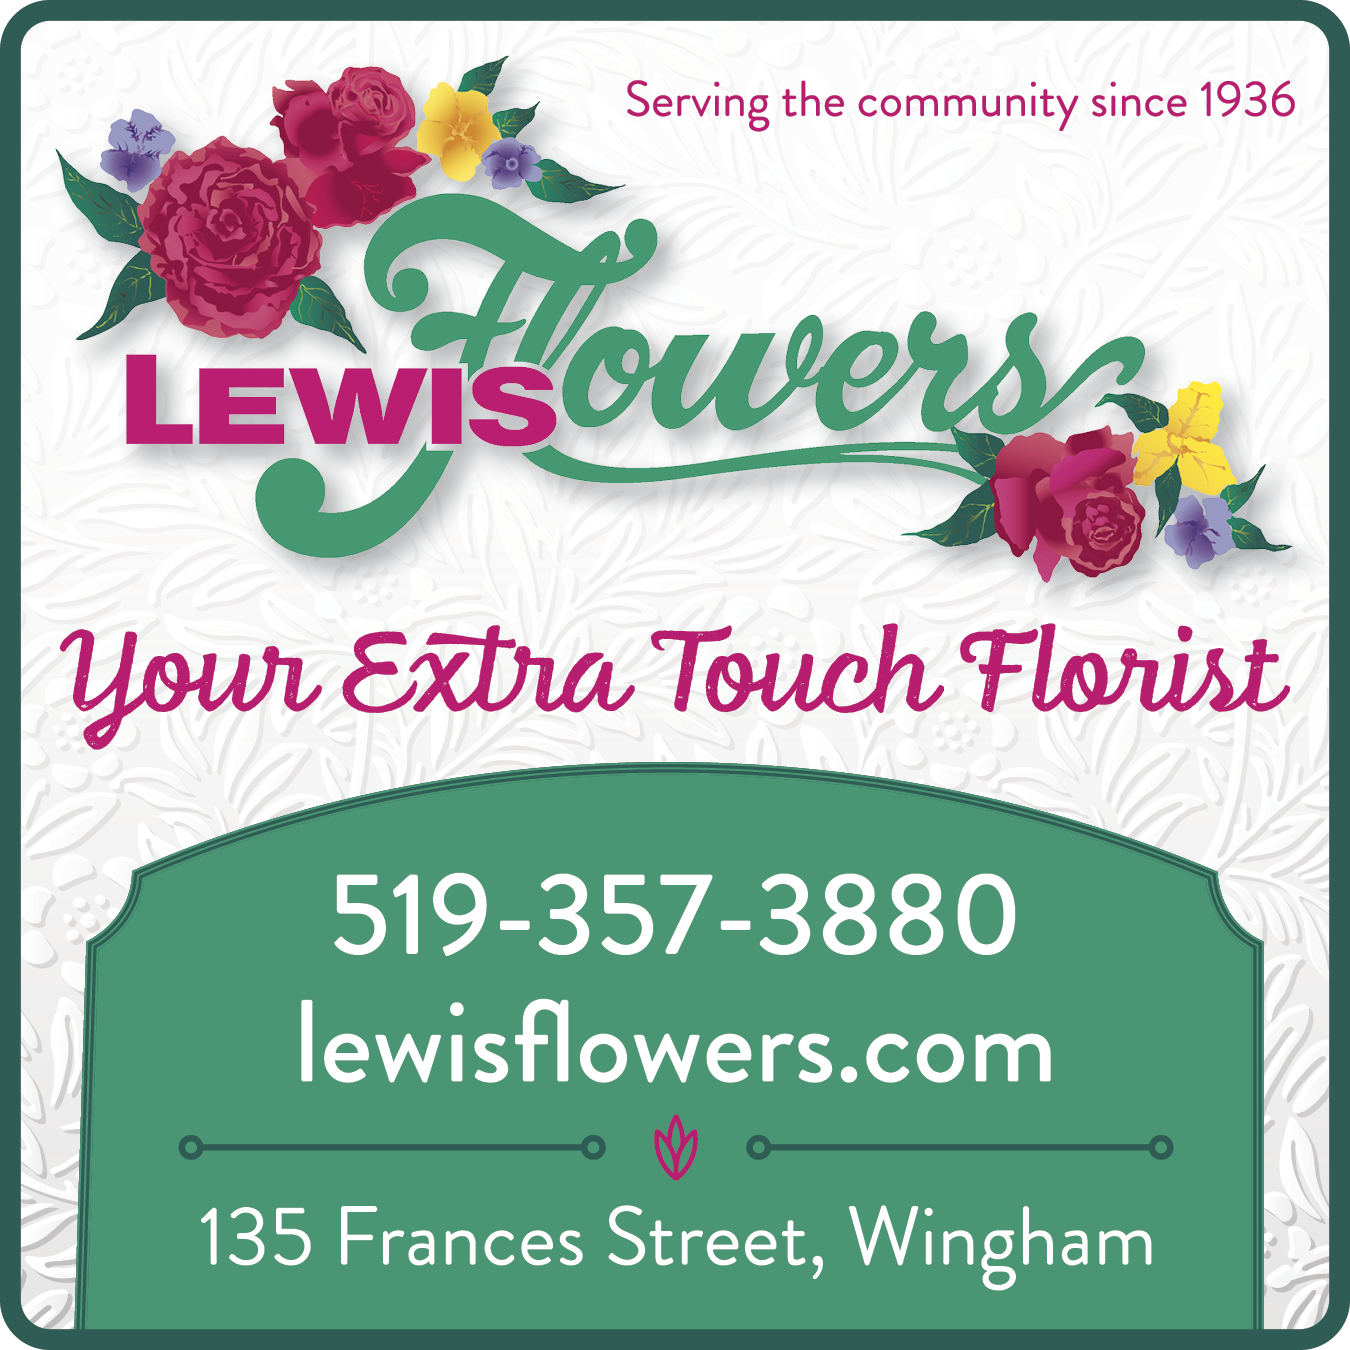 Lewis Flowers